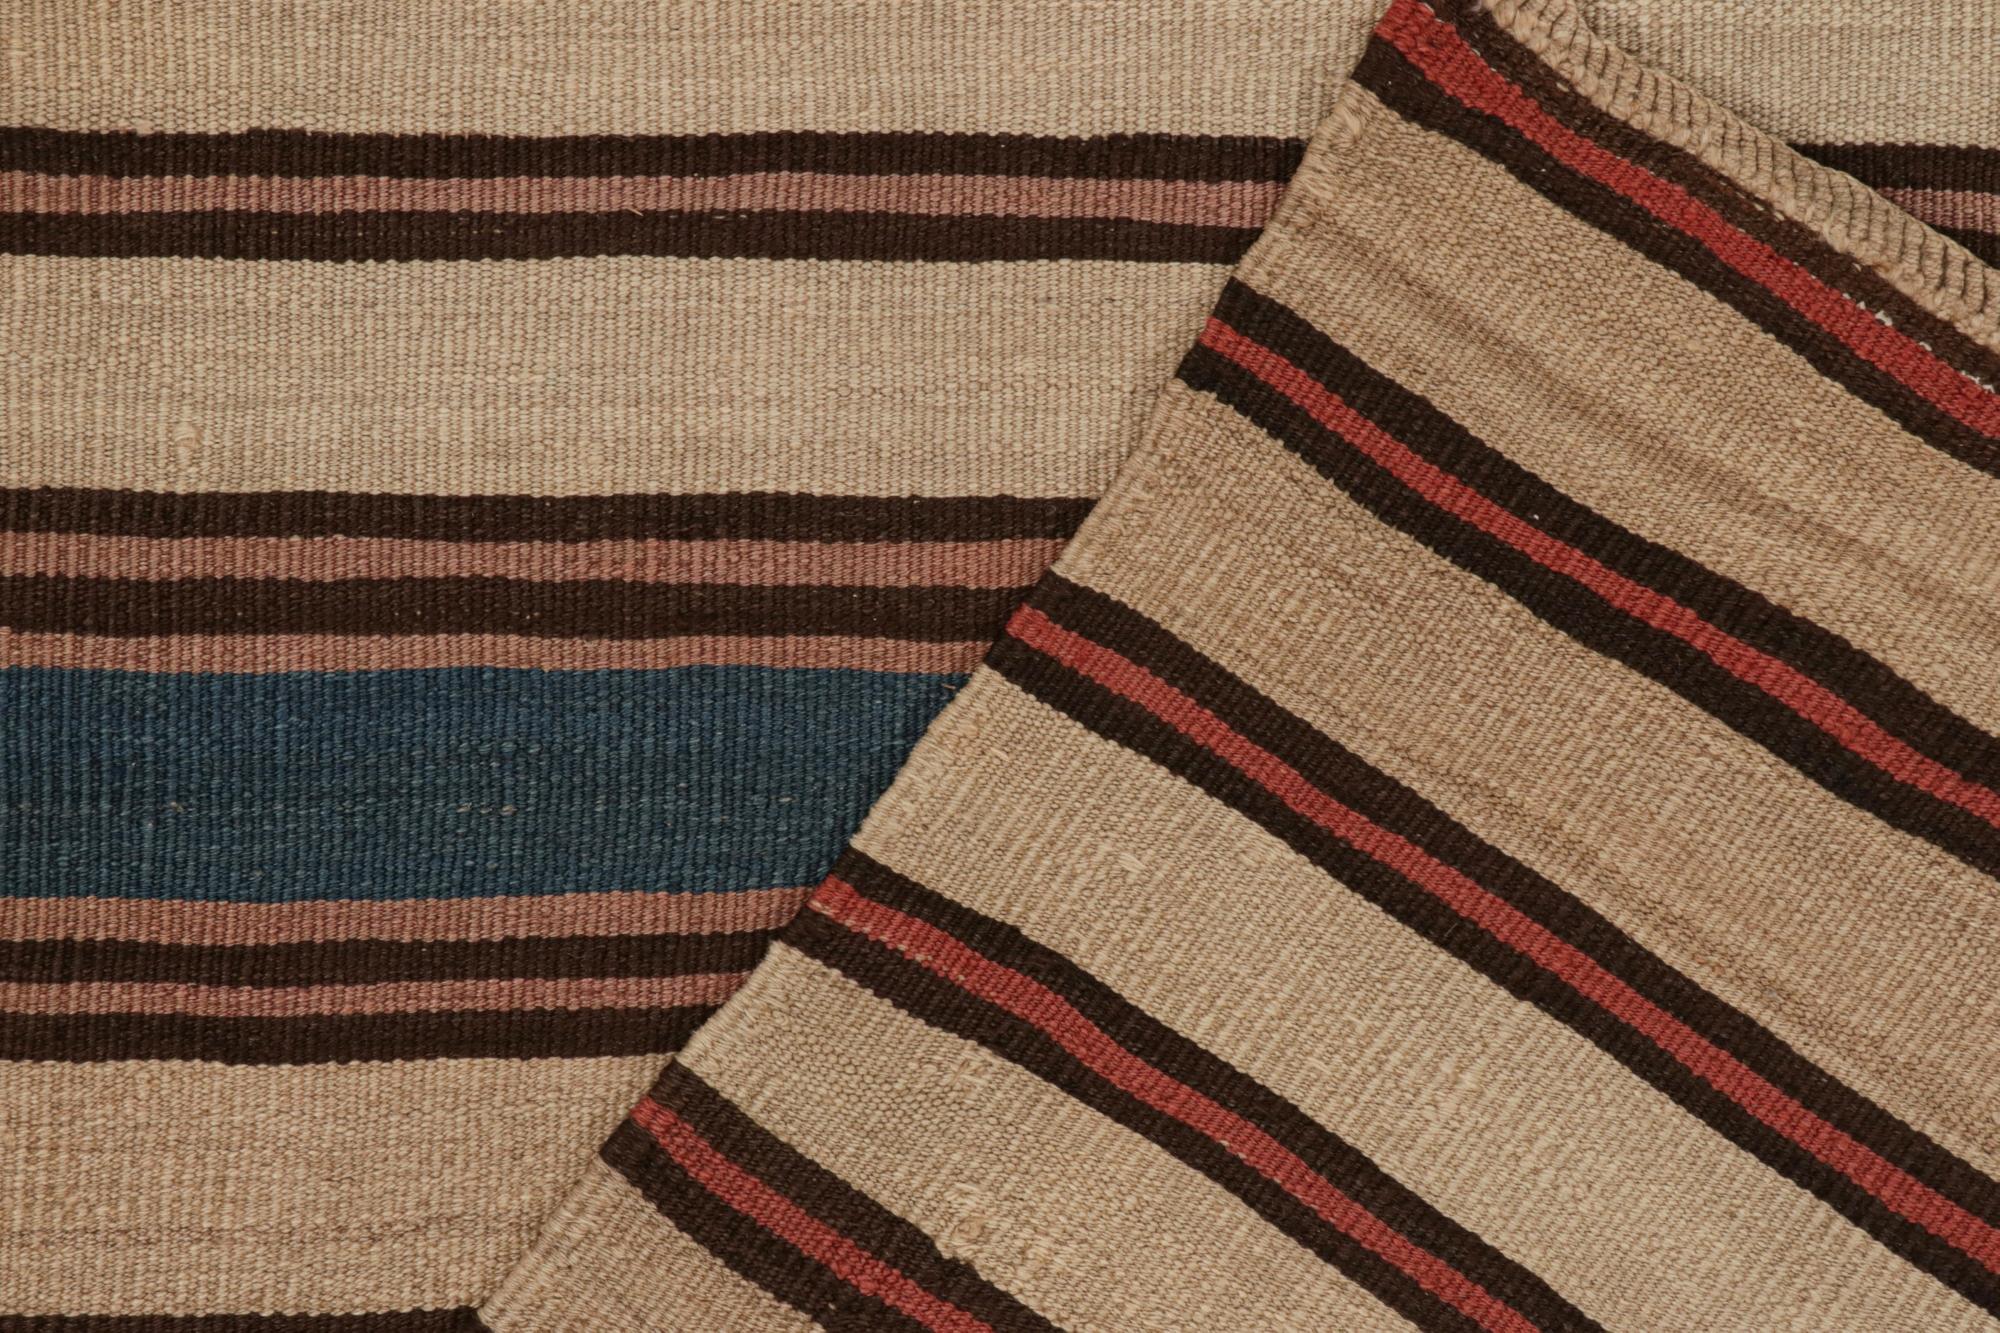 Wool Vintage Shahsavan Persian Kilim in Beige, Brown & Blue Stripes by Rug & Kilim